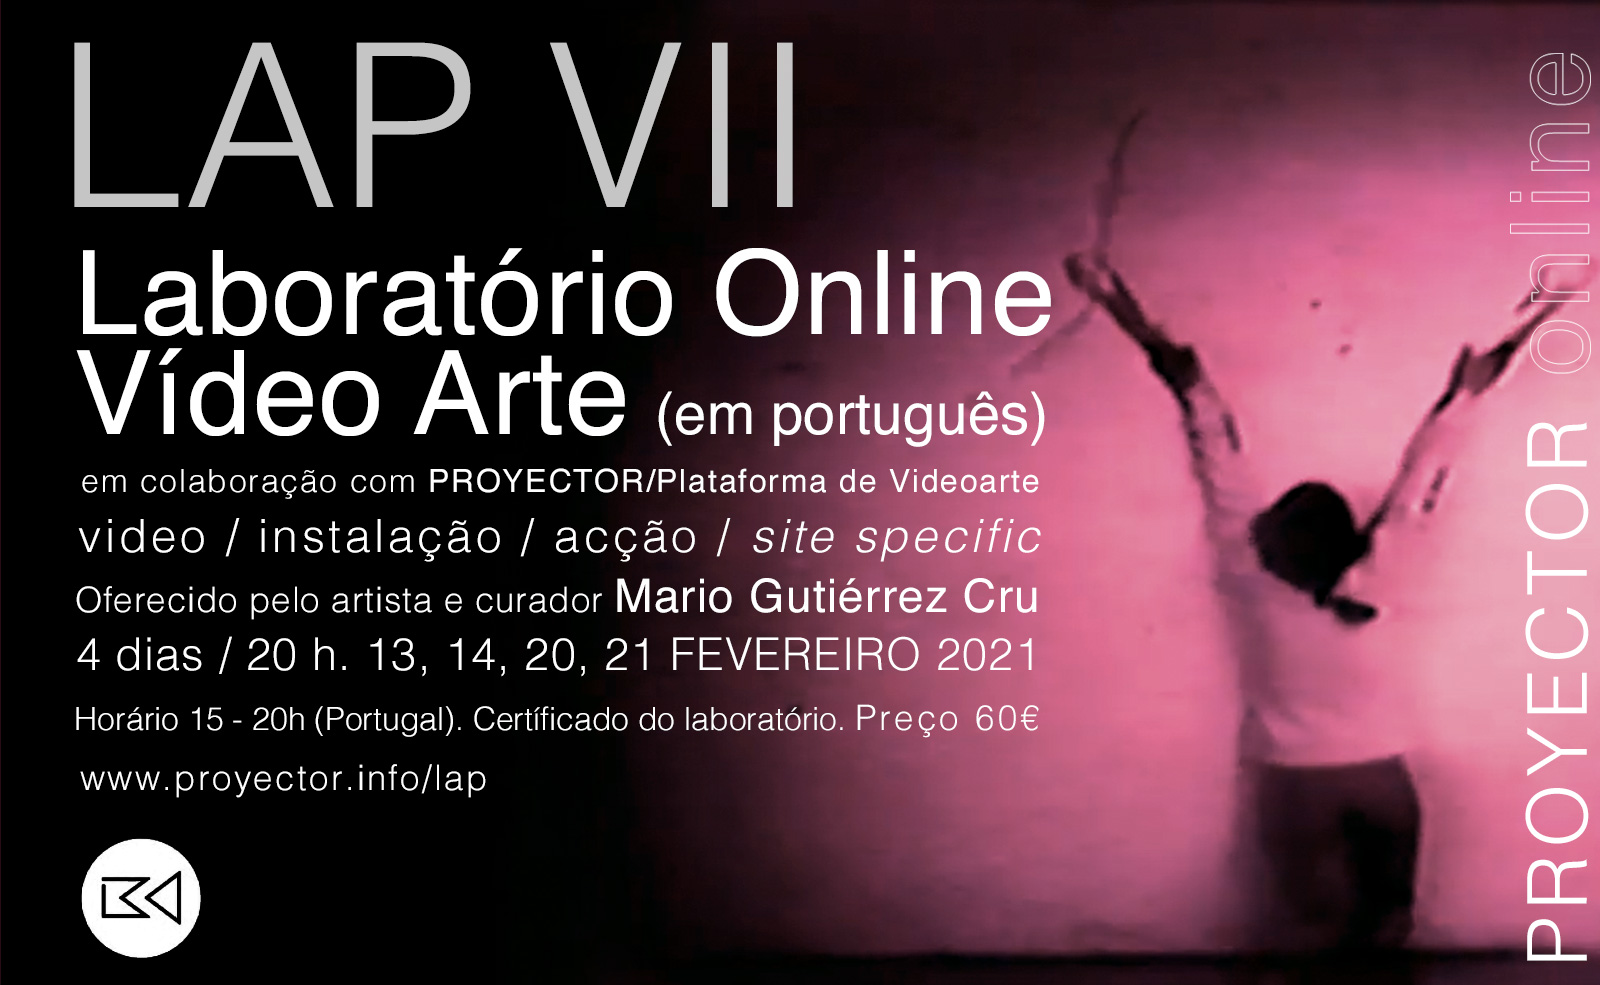 13-21.02.2021. LAP VII – Laboratório Online Video Arte (em português)